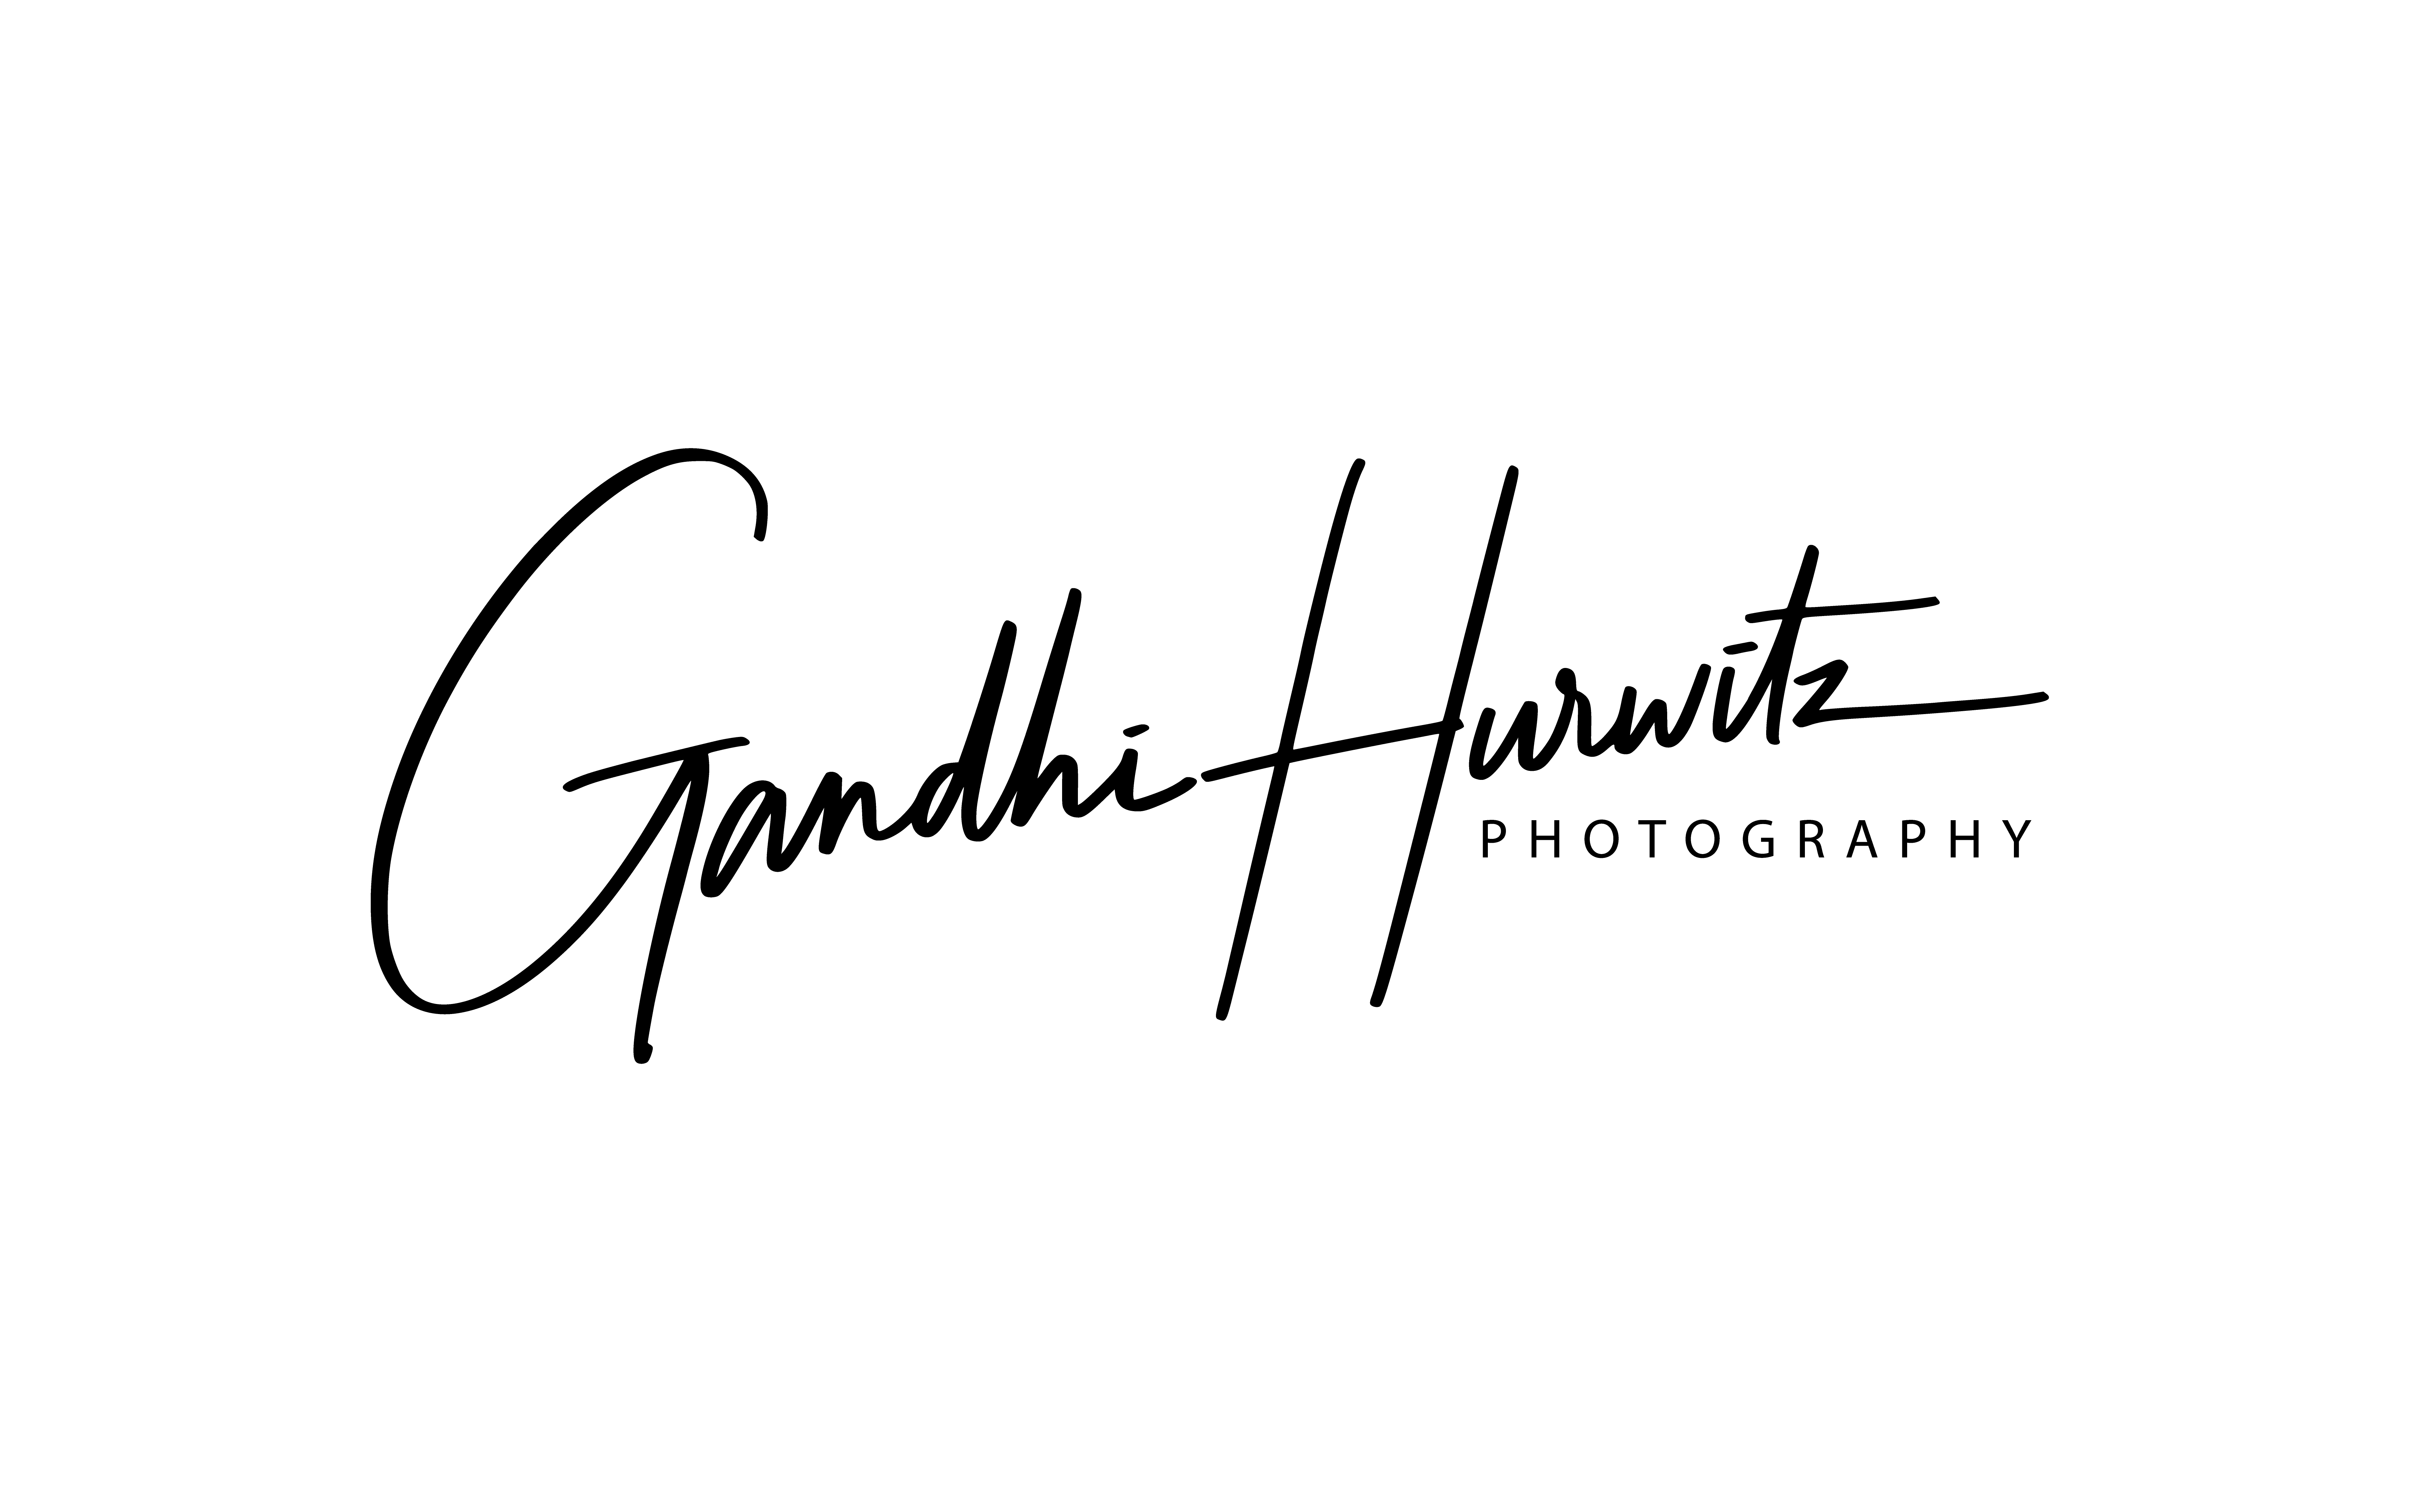 gandhihurwitz